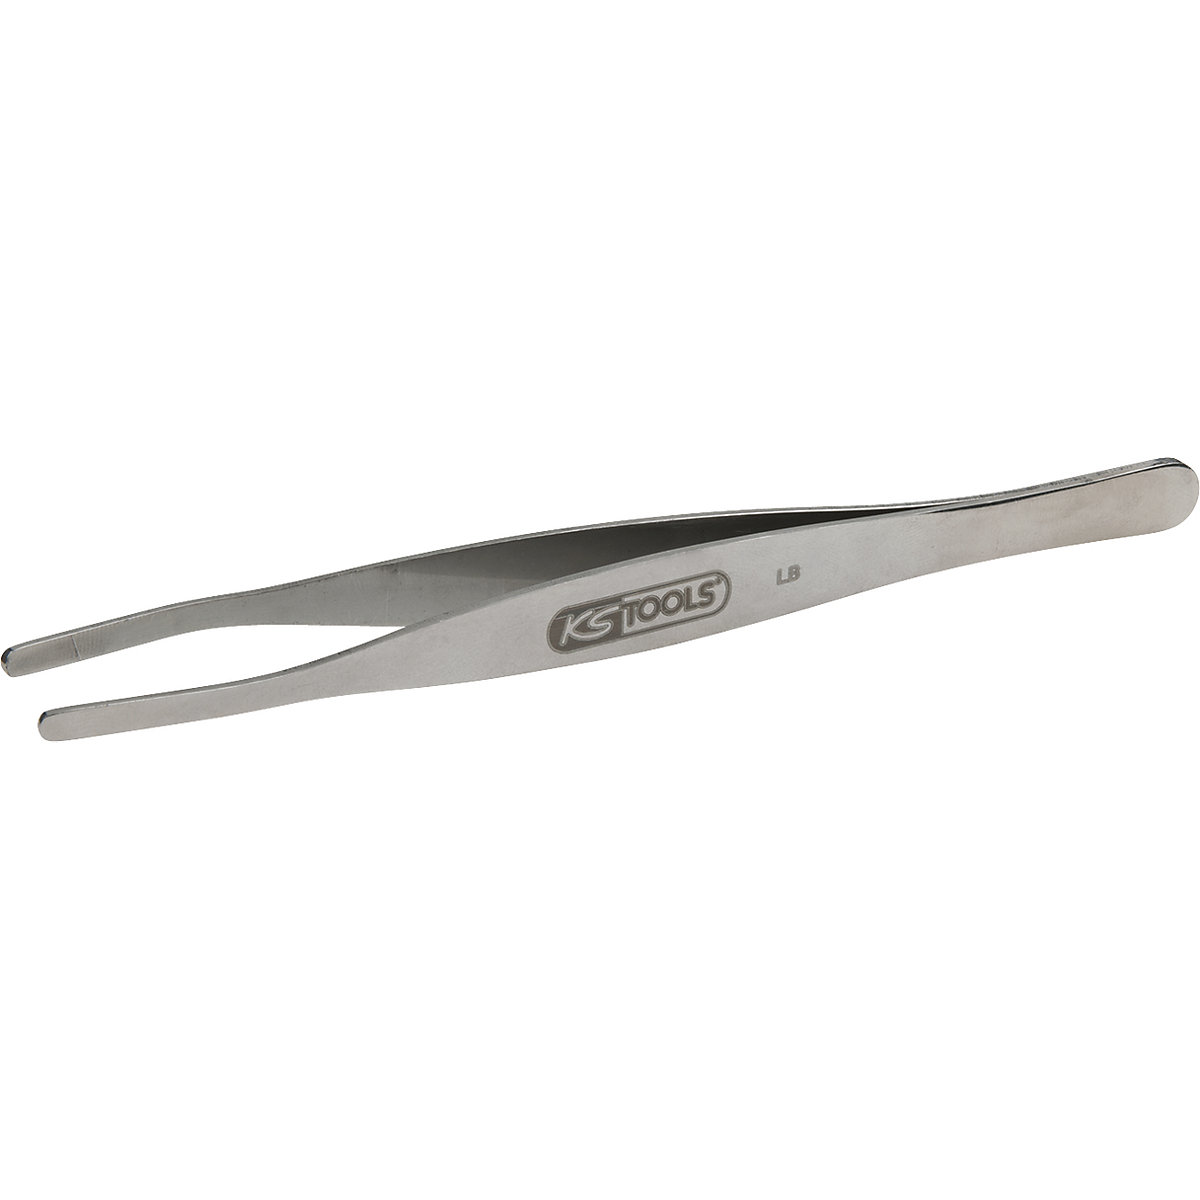 Stainless steel tweezers – KS Tools